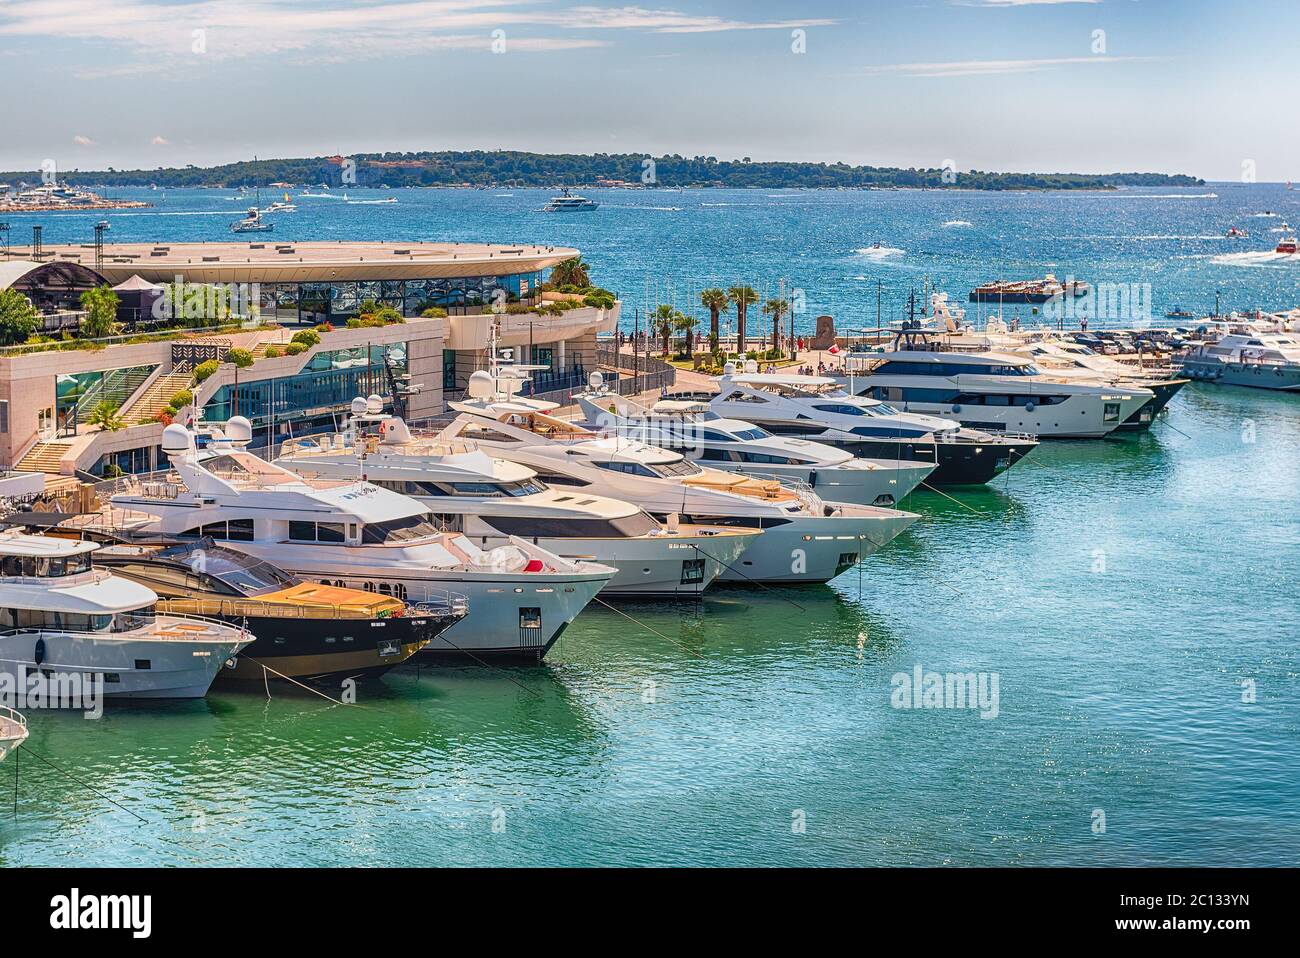 Blick auf Luxusyachten des Vieux Port im Viertel Le Suquet, Stadtzentrum und alten Hafen von Cannes, Cote d'Azur, Frankreich Stockfoto